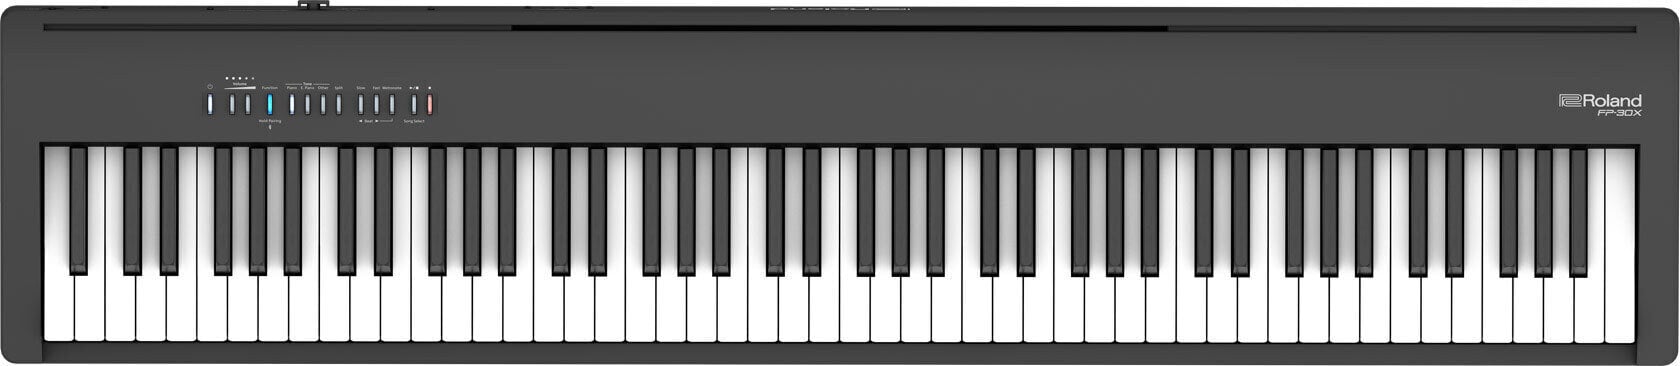 Digitralni koncertni pianino Roland FP 30X BK Digitralni koncertni pianino